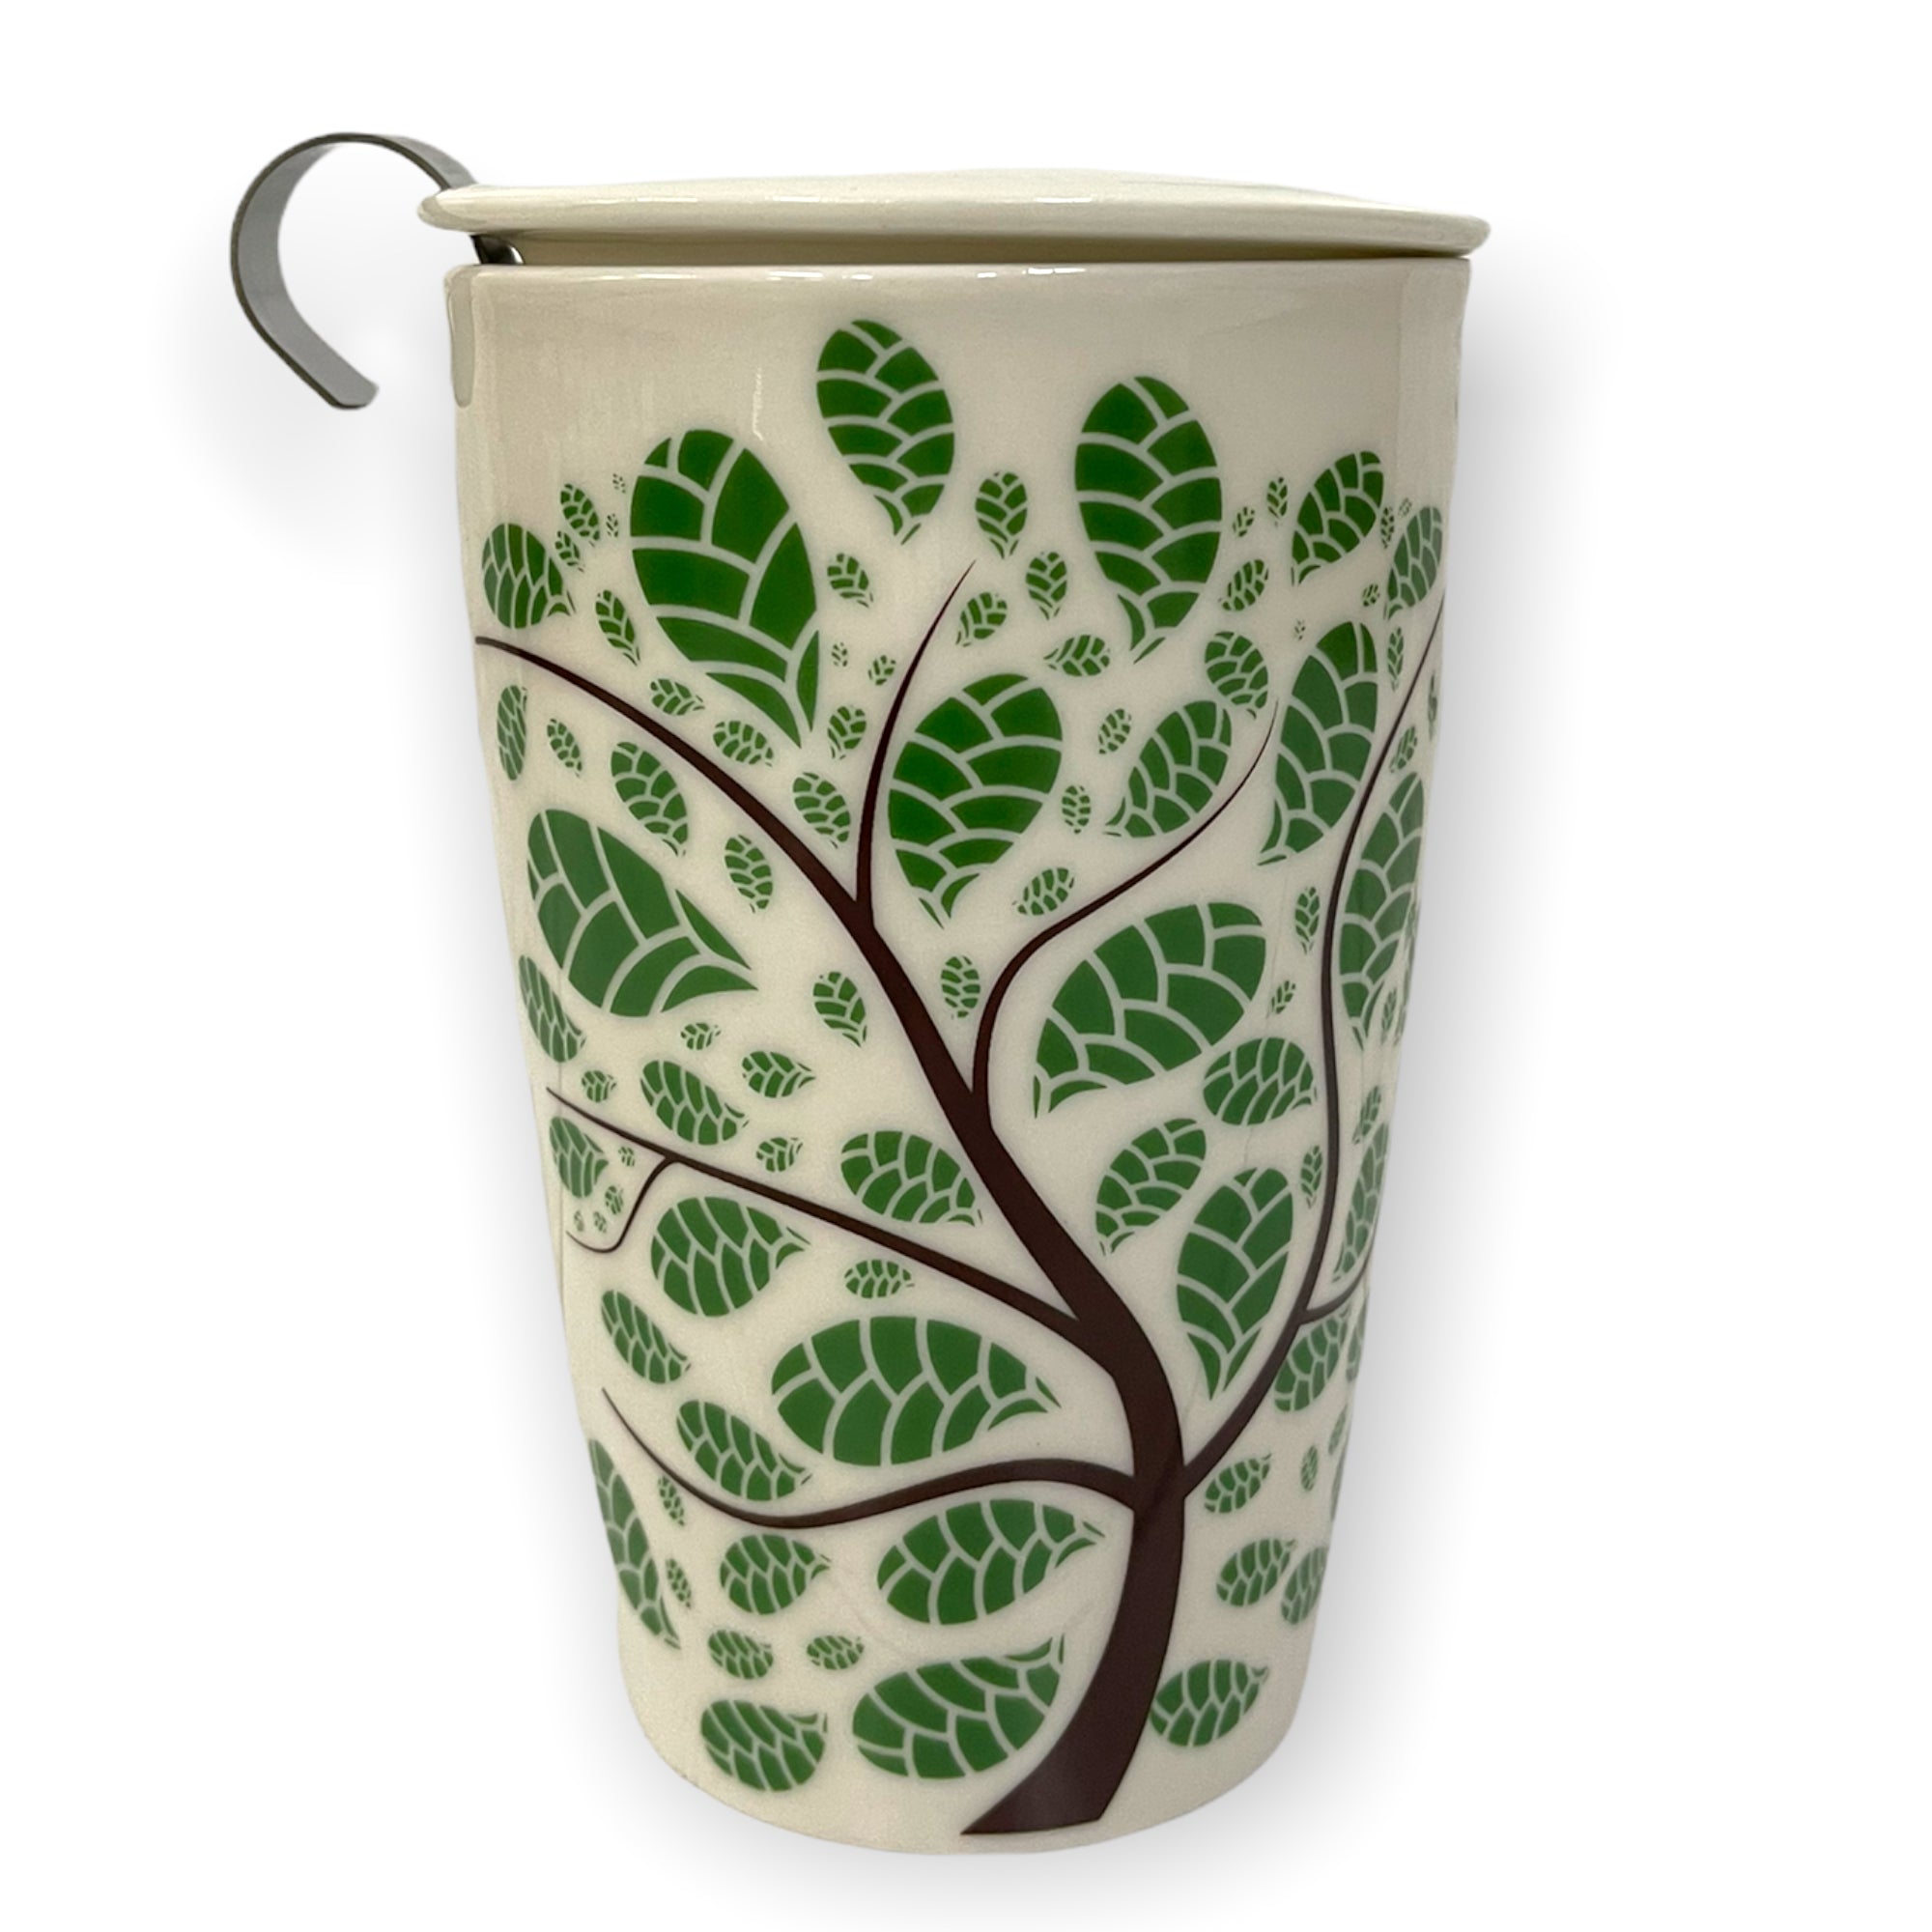 Ceramic Mug with Tea Infuser and Lid - Steepologie